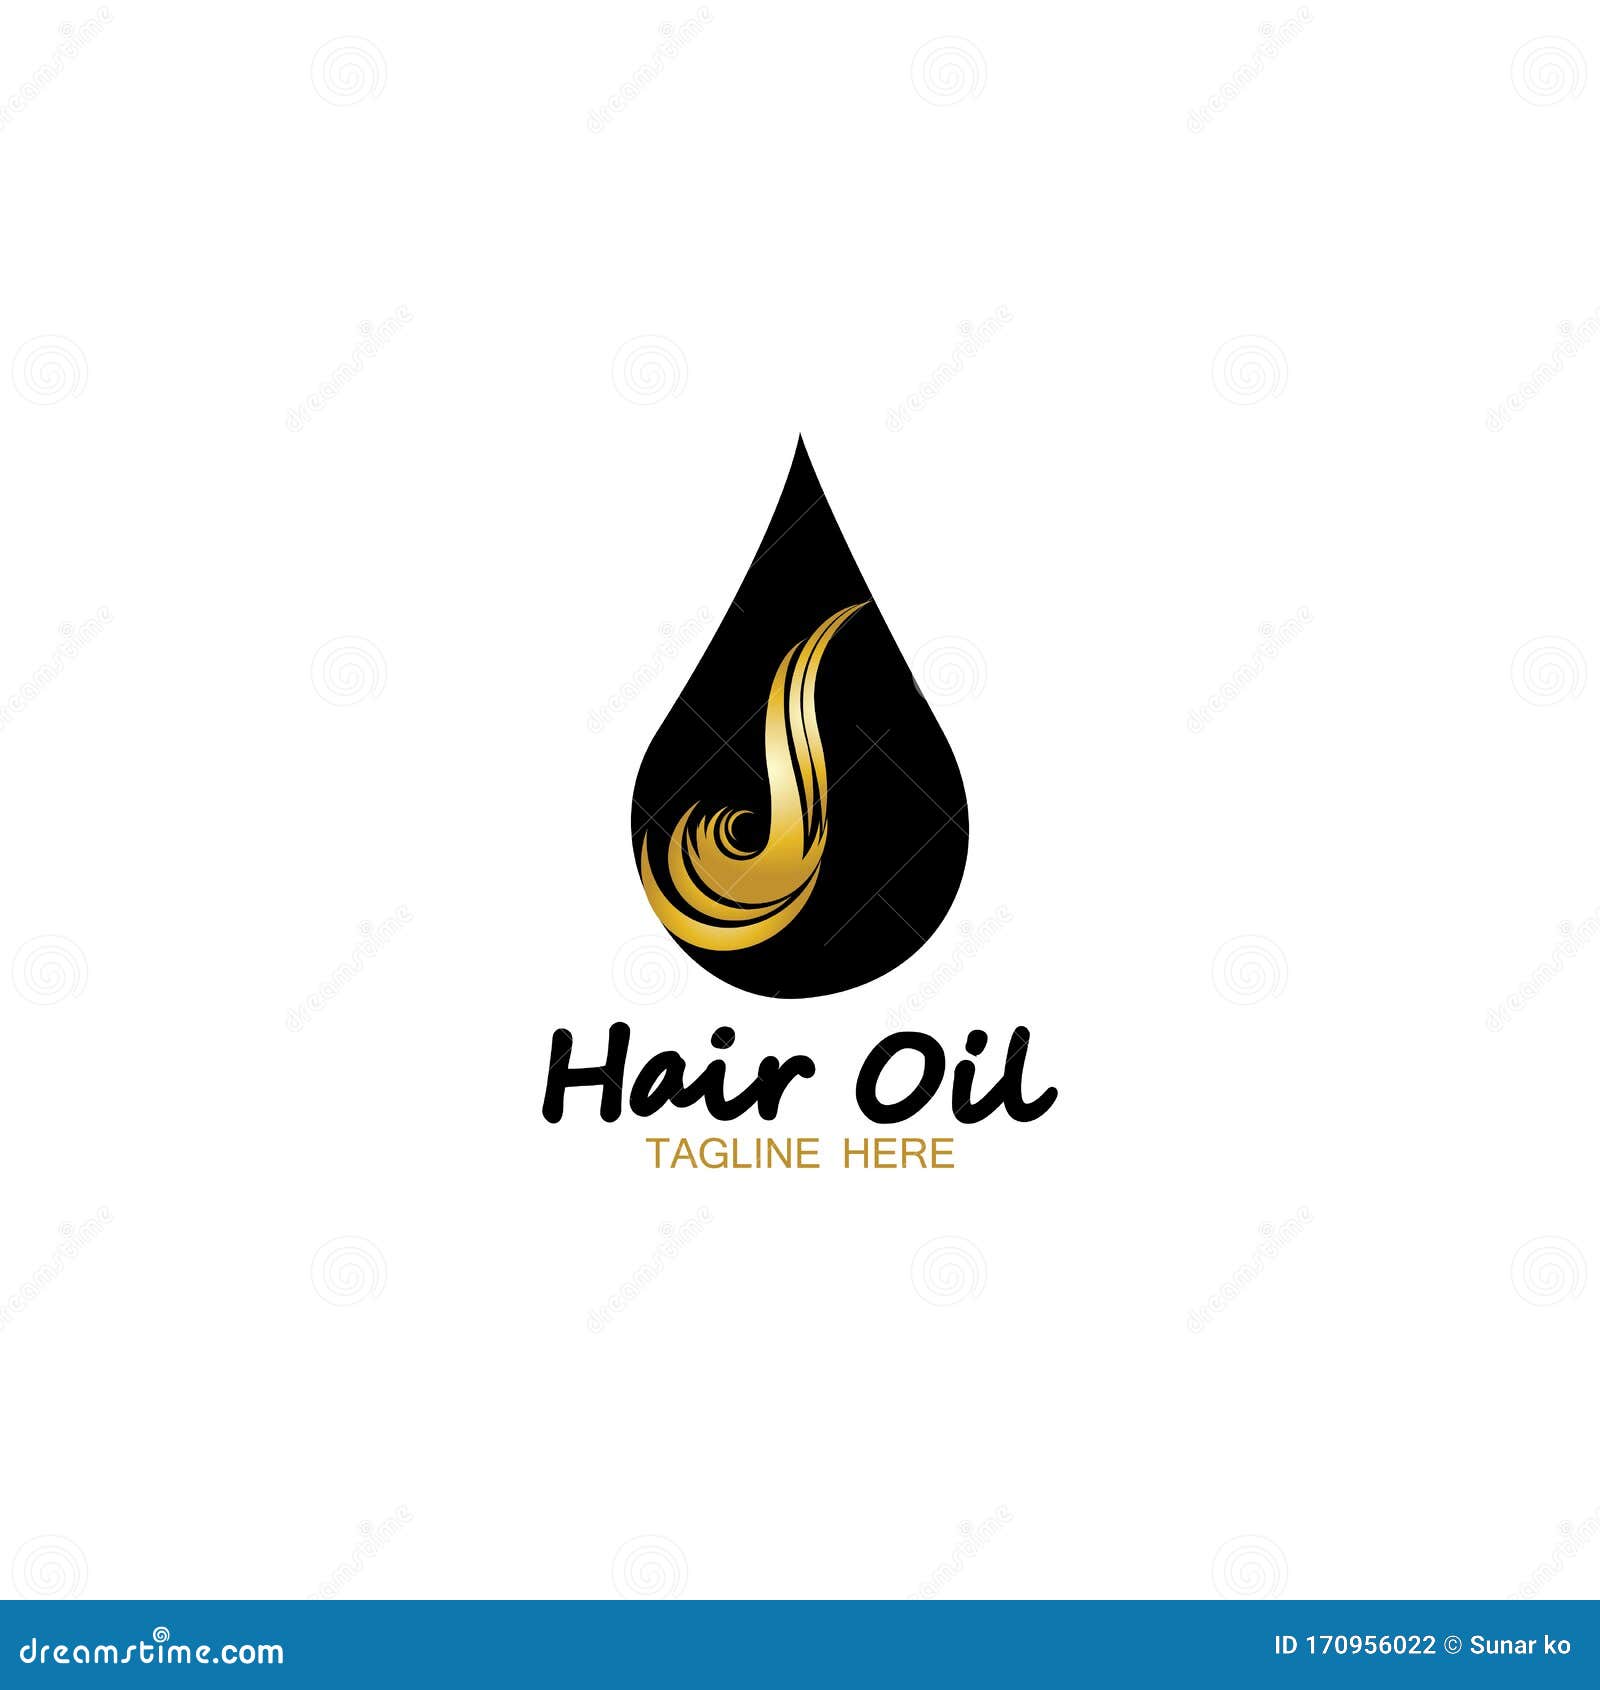 Buy HAIR OIL LOGO Design Custom Professional Hair Oil Logo Online in India   Etsy